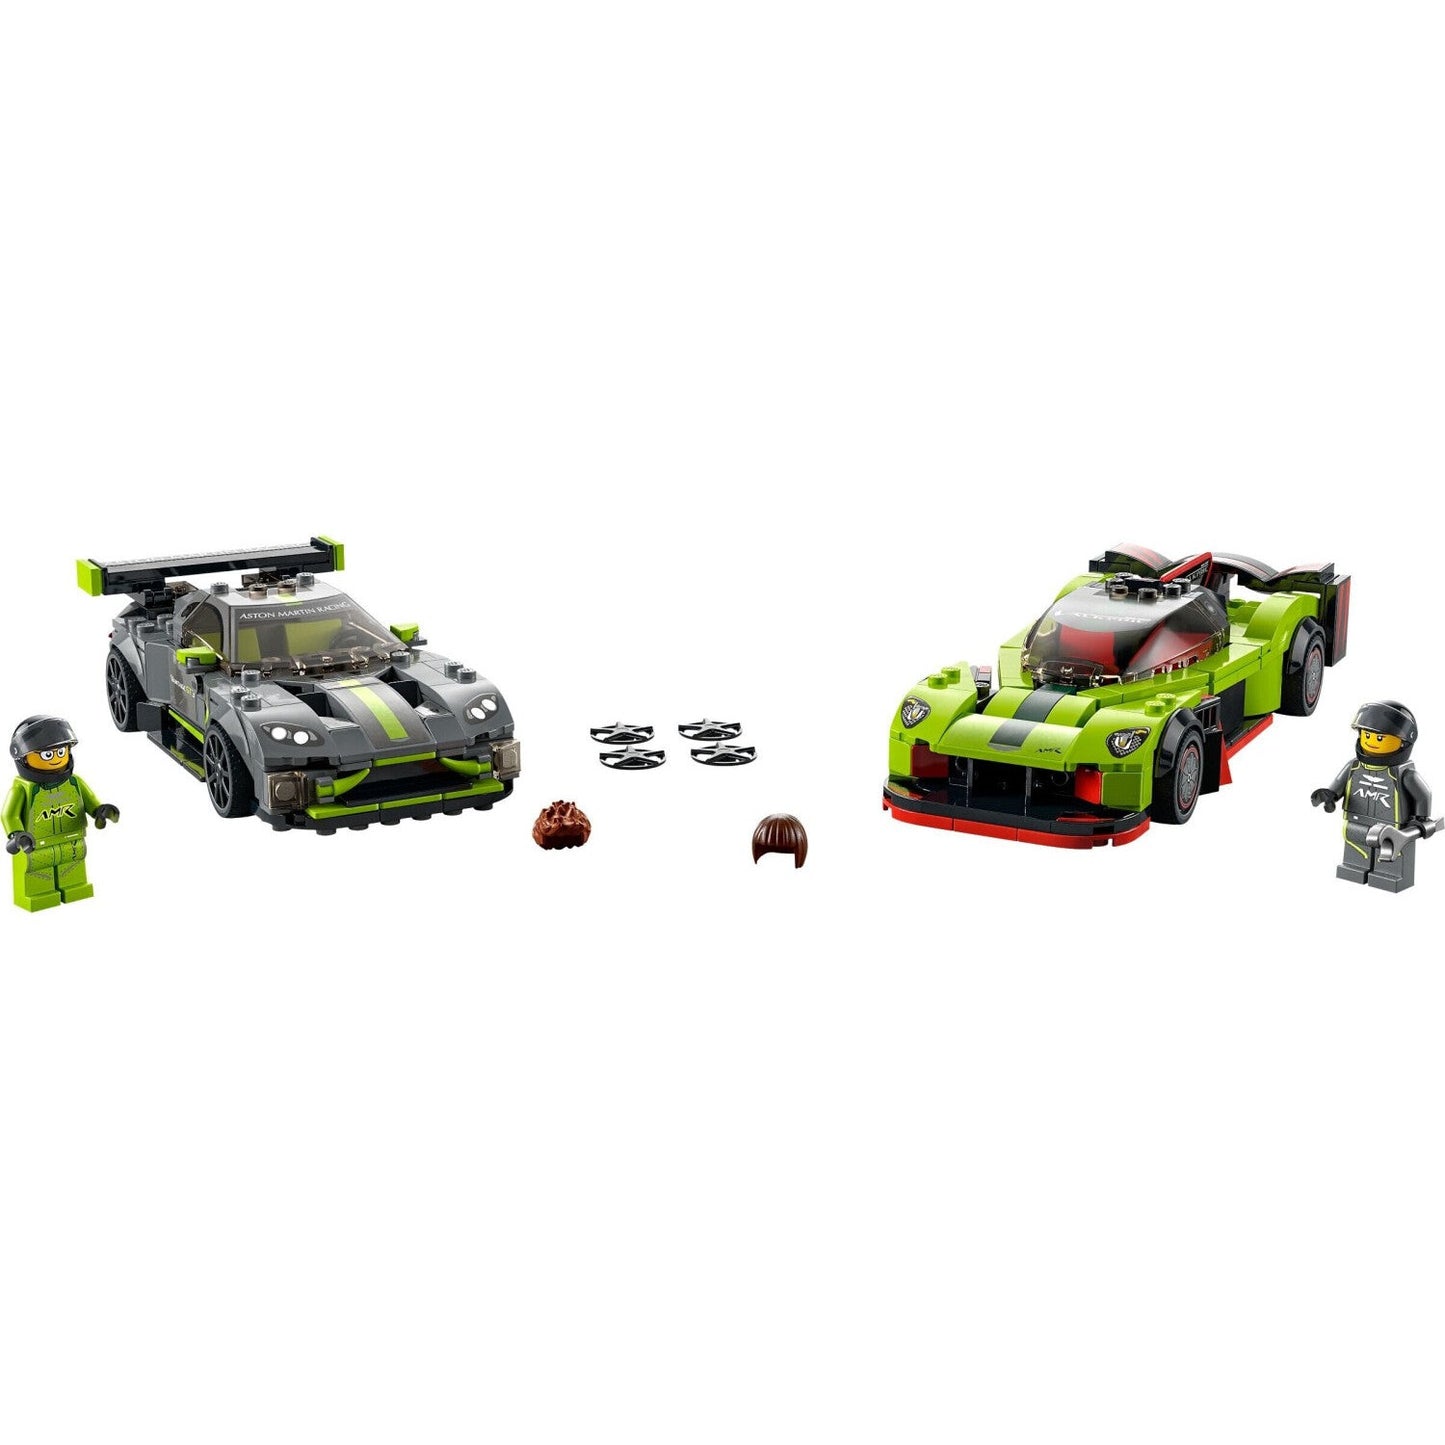 LEGO 76910 Speed Champions Aston Martin Valkyrie AMR Pro & Aston Martin Vantage GT3